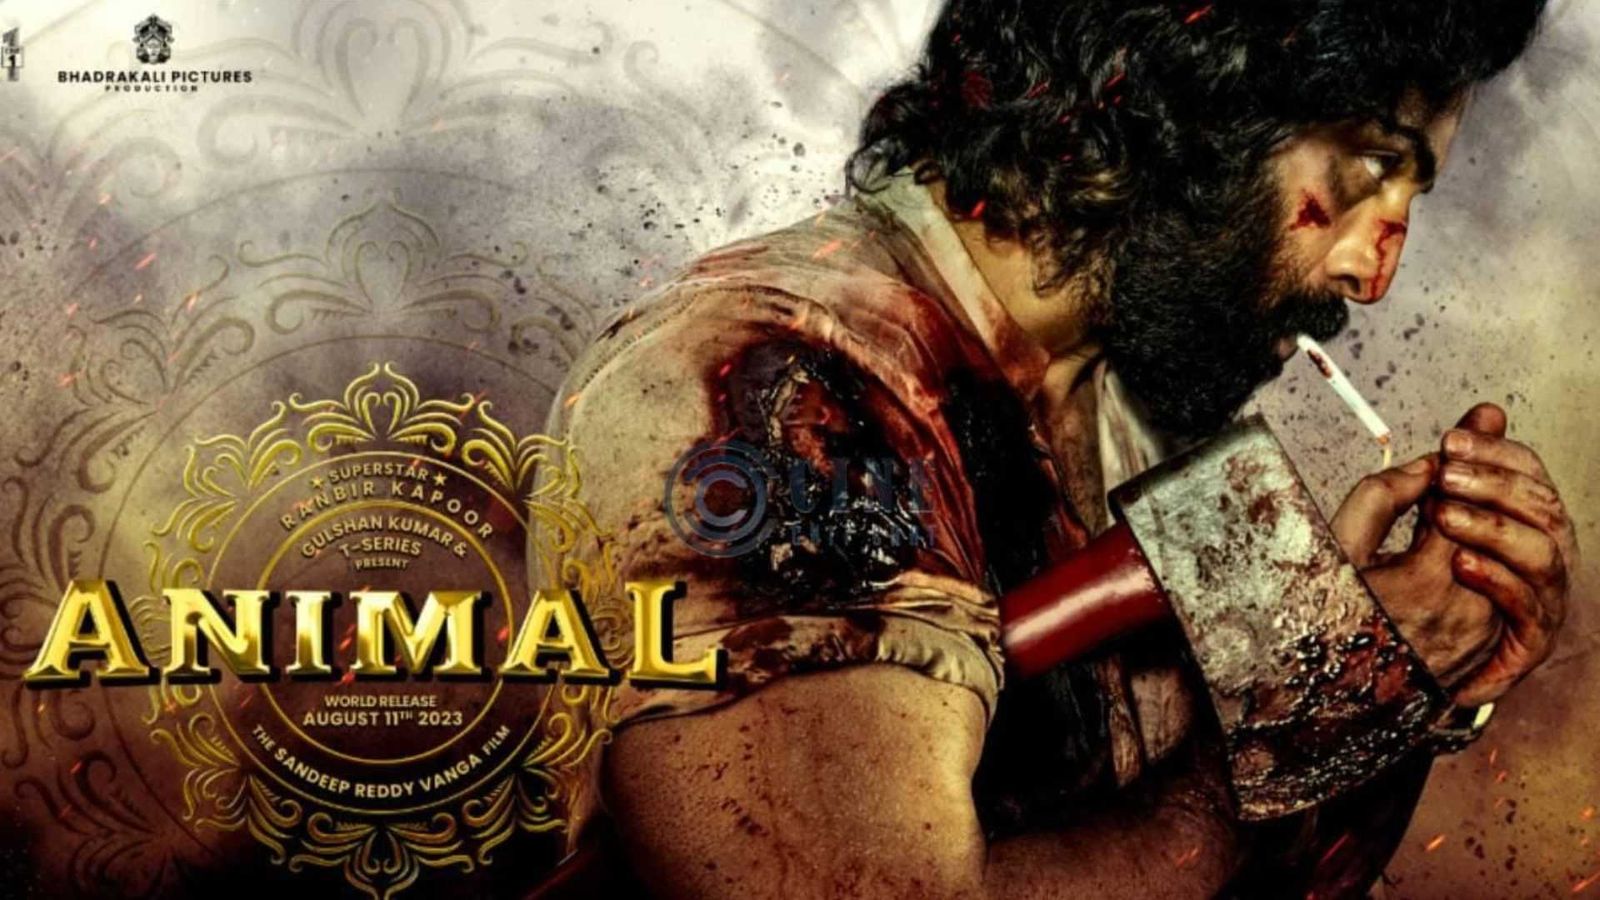 Animal box office day 17: रणबीर कपूर की फिल्म ने कमा डाले 500 करोड़, जल्द टूटेगा पठान-गदर 2 का रिकॉर्ड